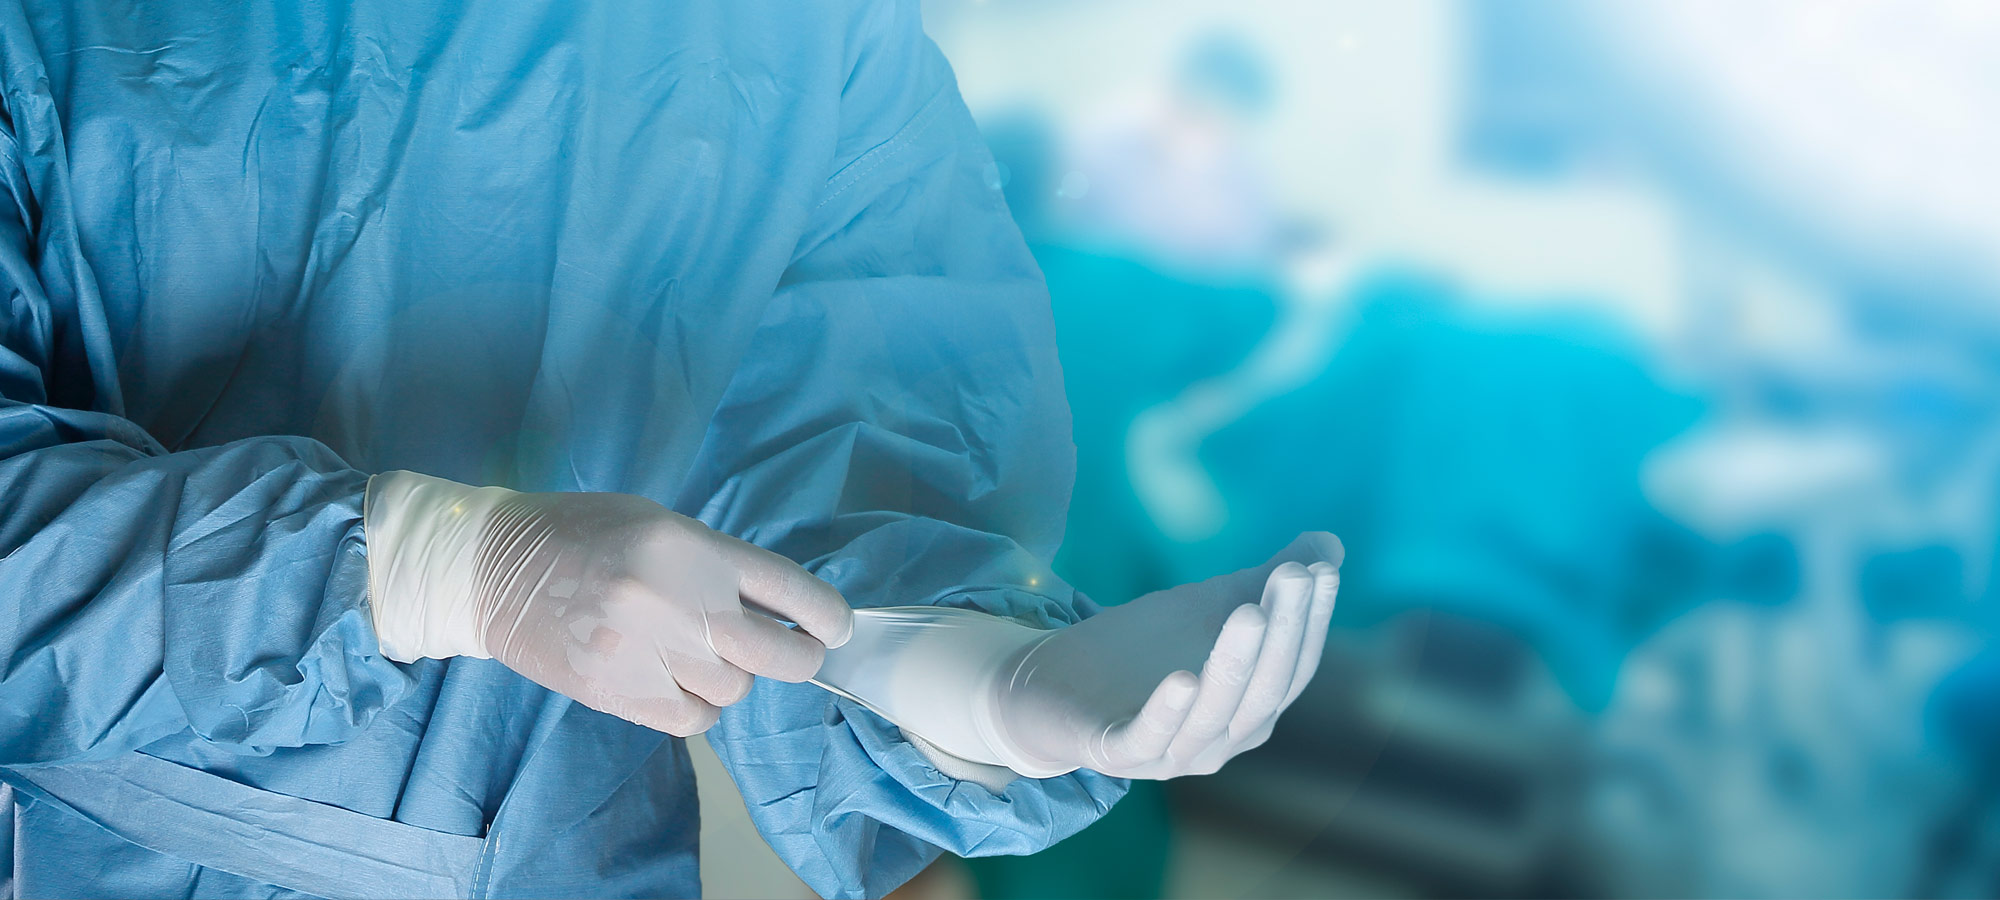 Un proyecto liderado por el Hospital General de Elche reduce un 60% las infecciones quirúrgicas